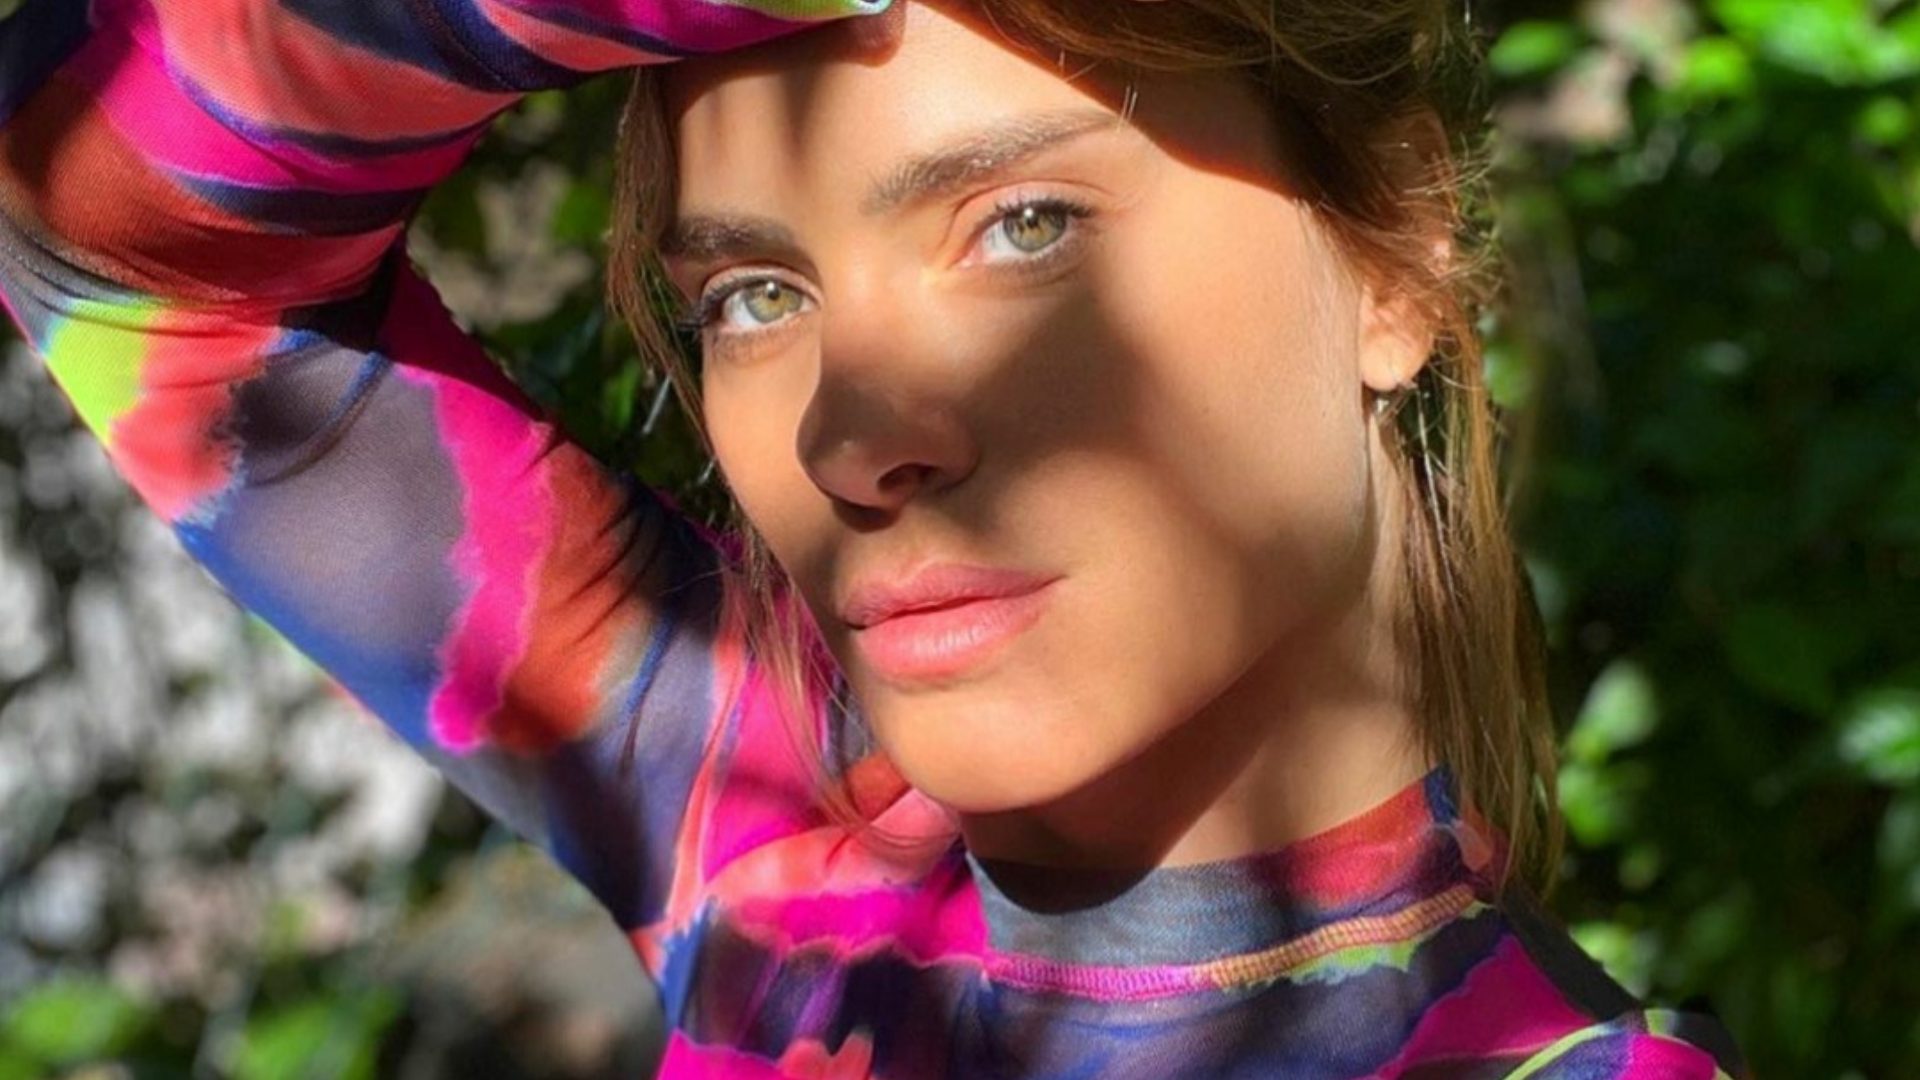 Carolina Dieckmann com estampa colorida (Foto: @loracarola/Instagram/Reprodução)